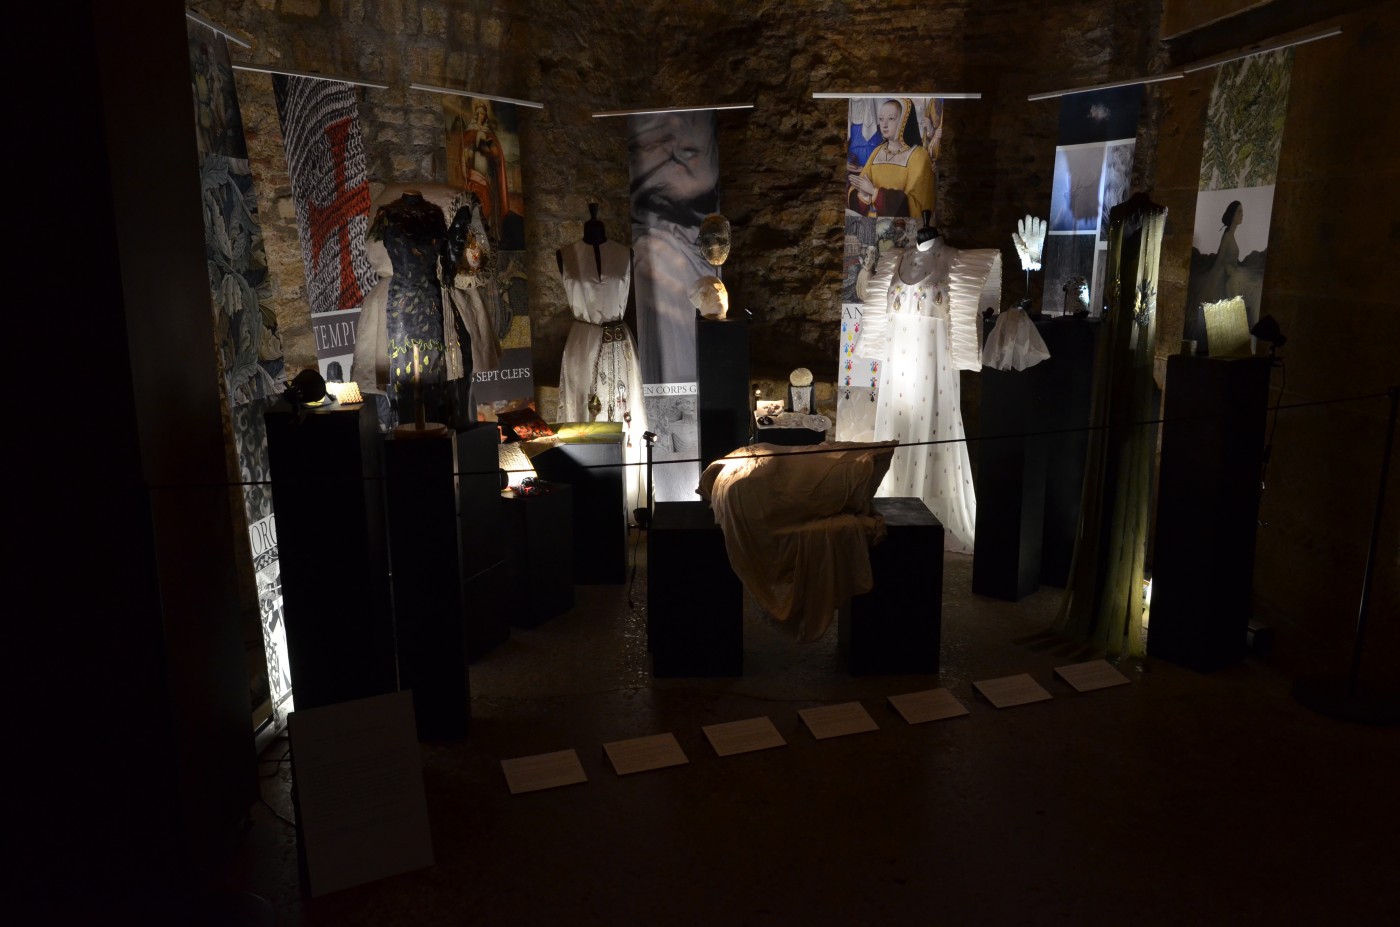 L’art en broderie au Moyen-Âge, partenariat avec le Musée de Cluny